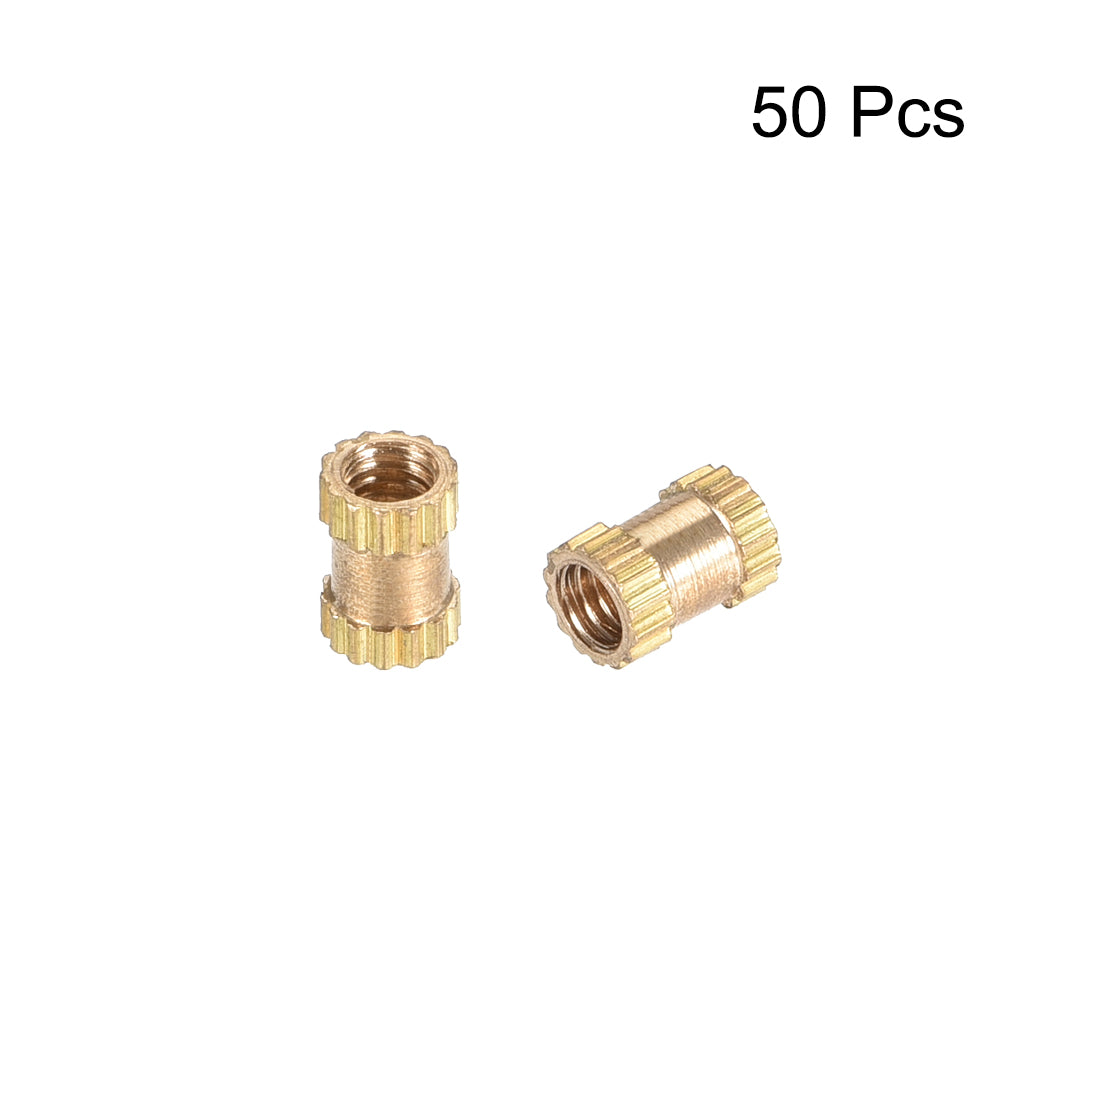 uxcell Uxcell Knurled Insert Nuts, M2.5 x 5mm(L) x 3.5mm(OD) Female Thread Brass Embedment Assortment Kit, 50 Pcs